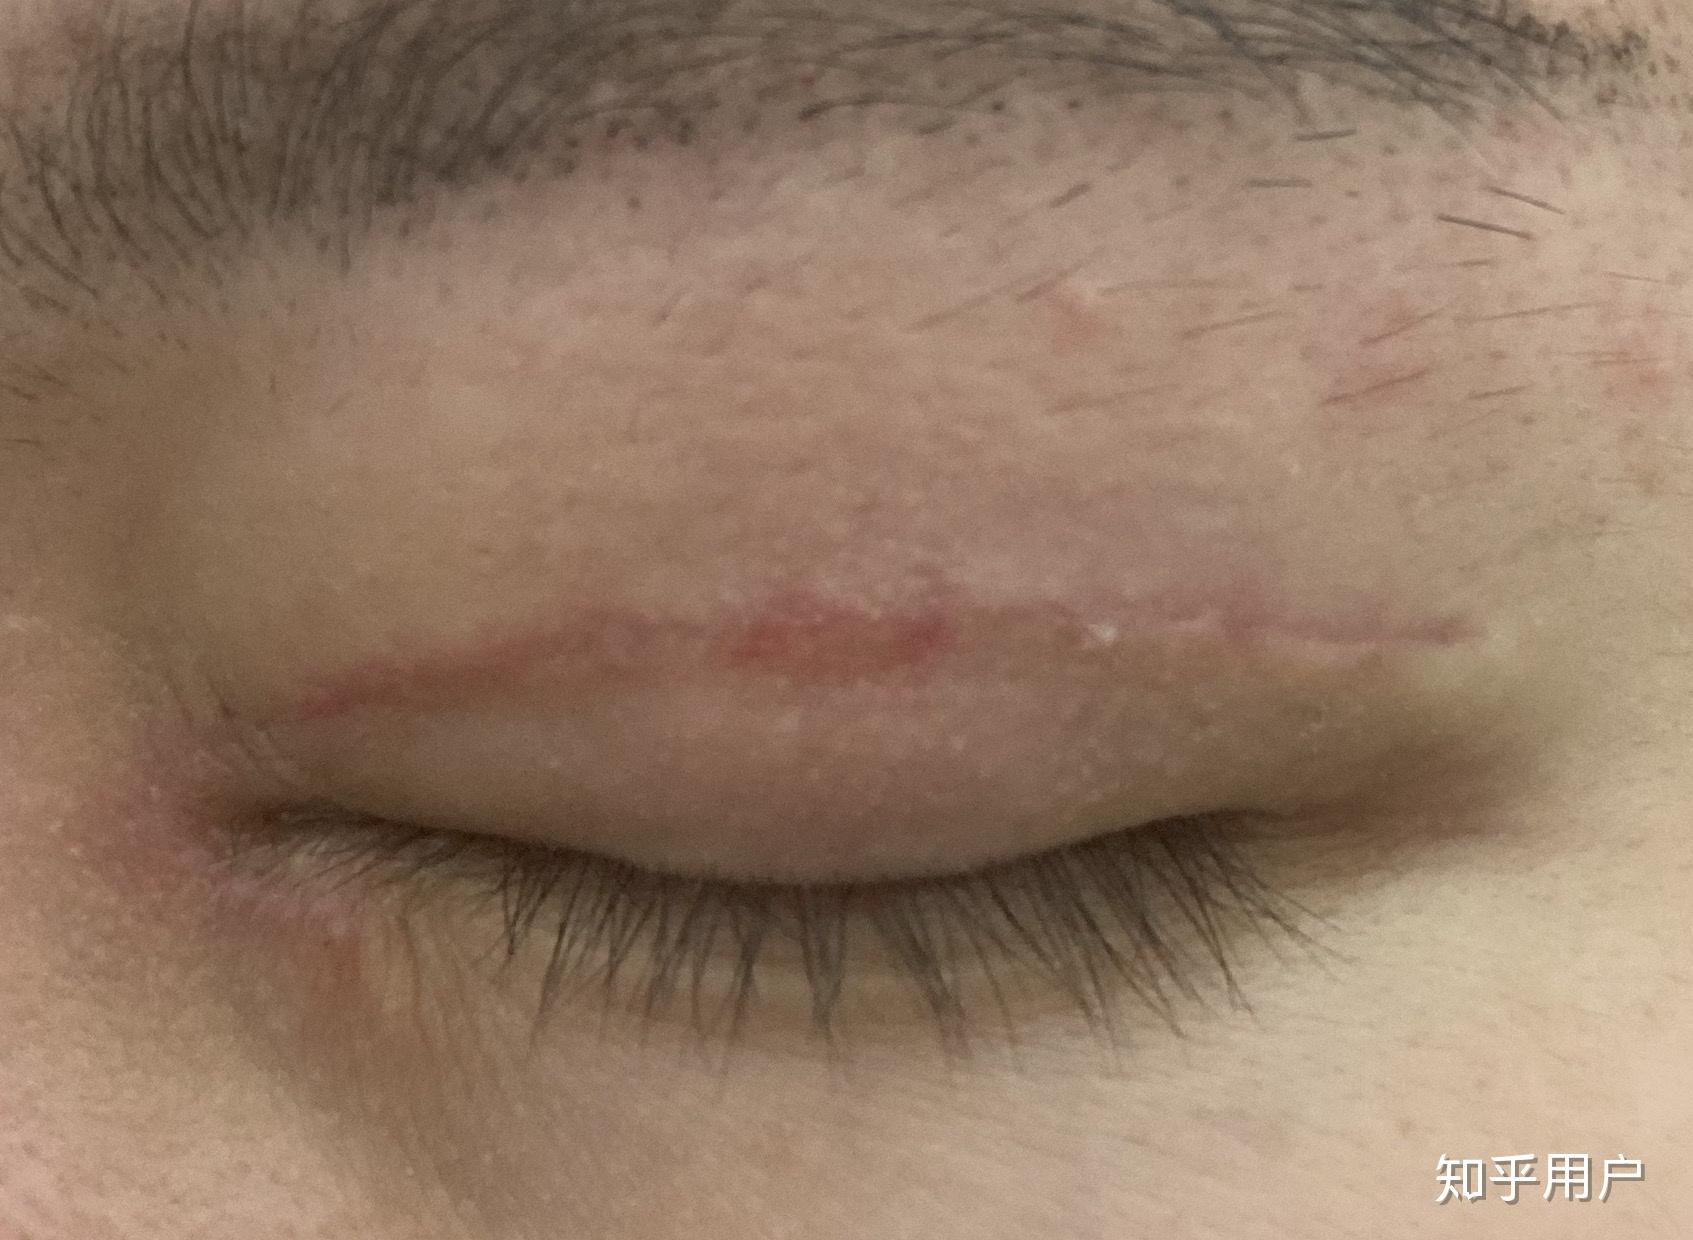 2019.6.13 双眼皮手术全过程+拆线及术后恢复-更新中 - 知乎